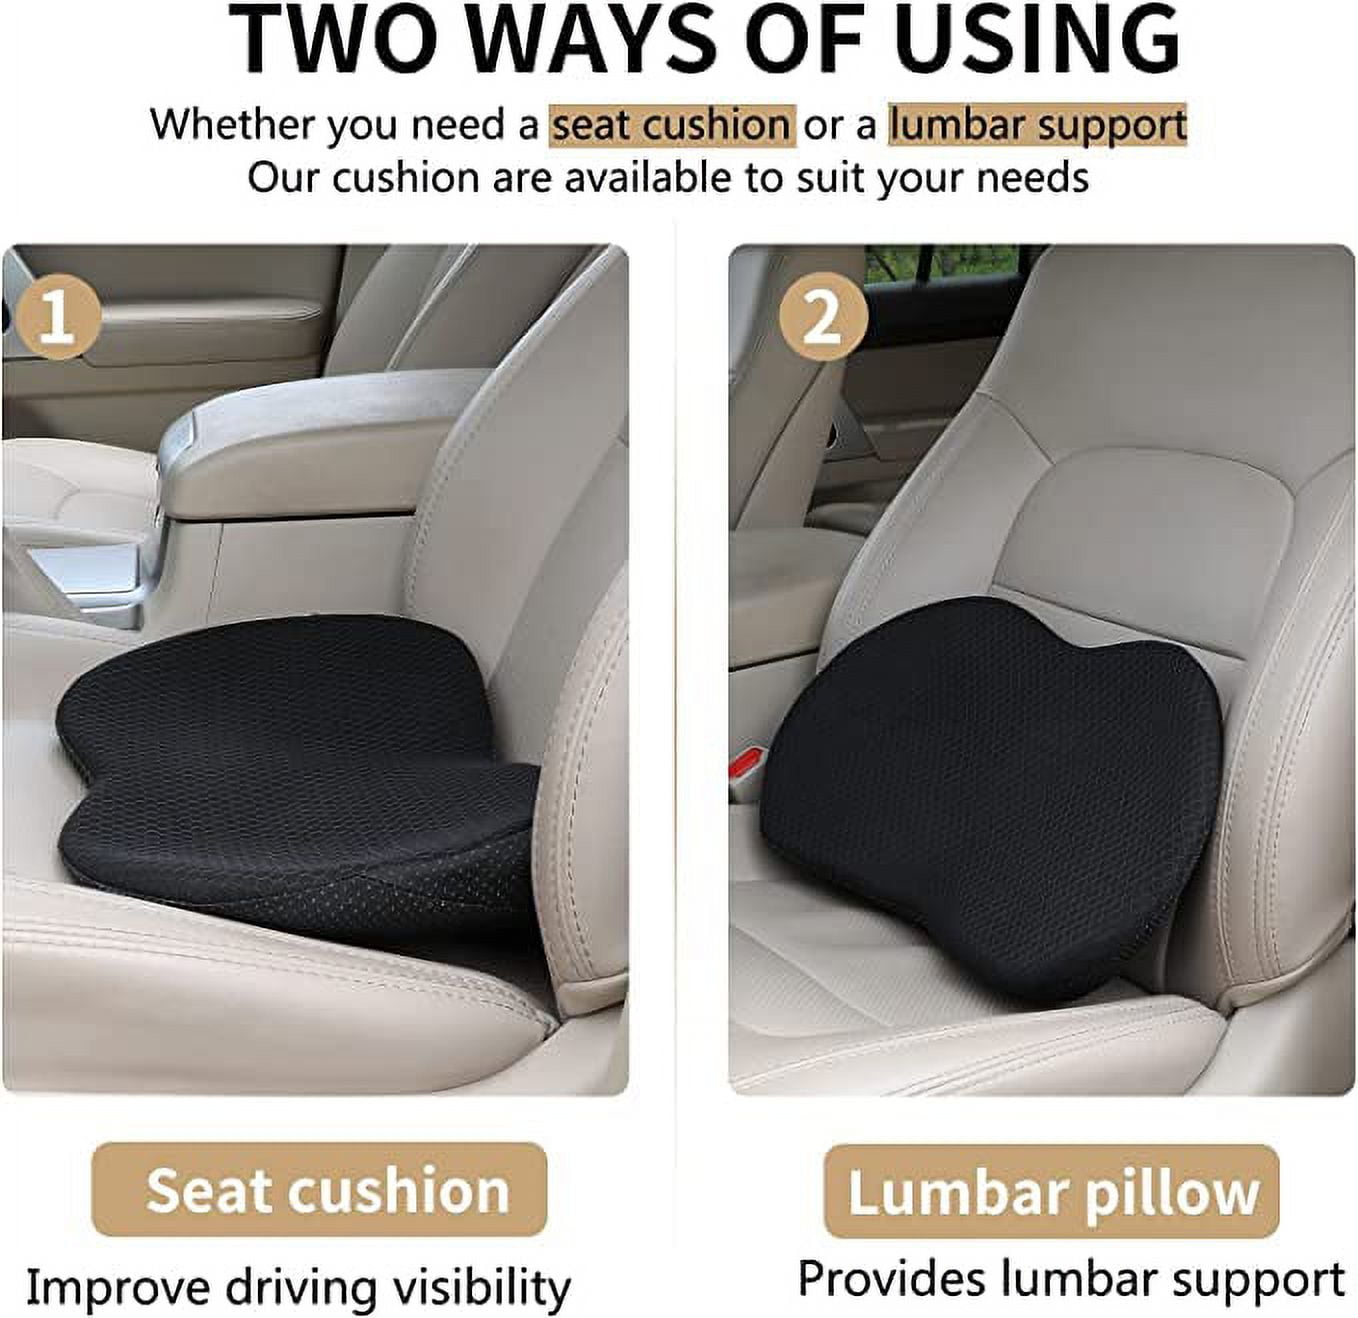 Memory foam sciatica cushion in car driver seat Stock Photo - Alamy